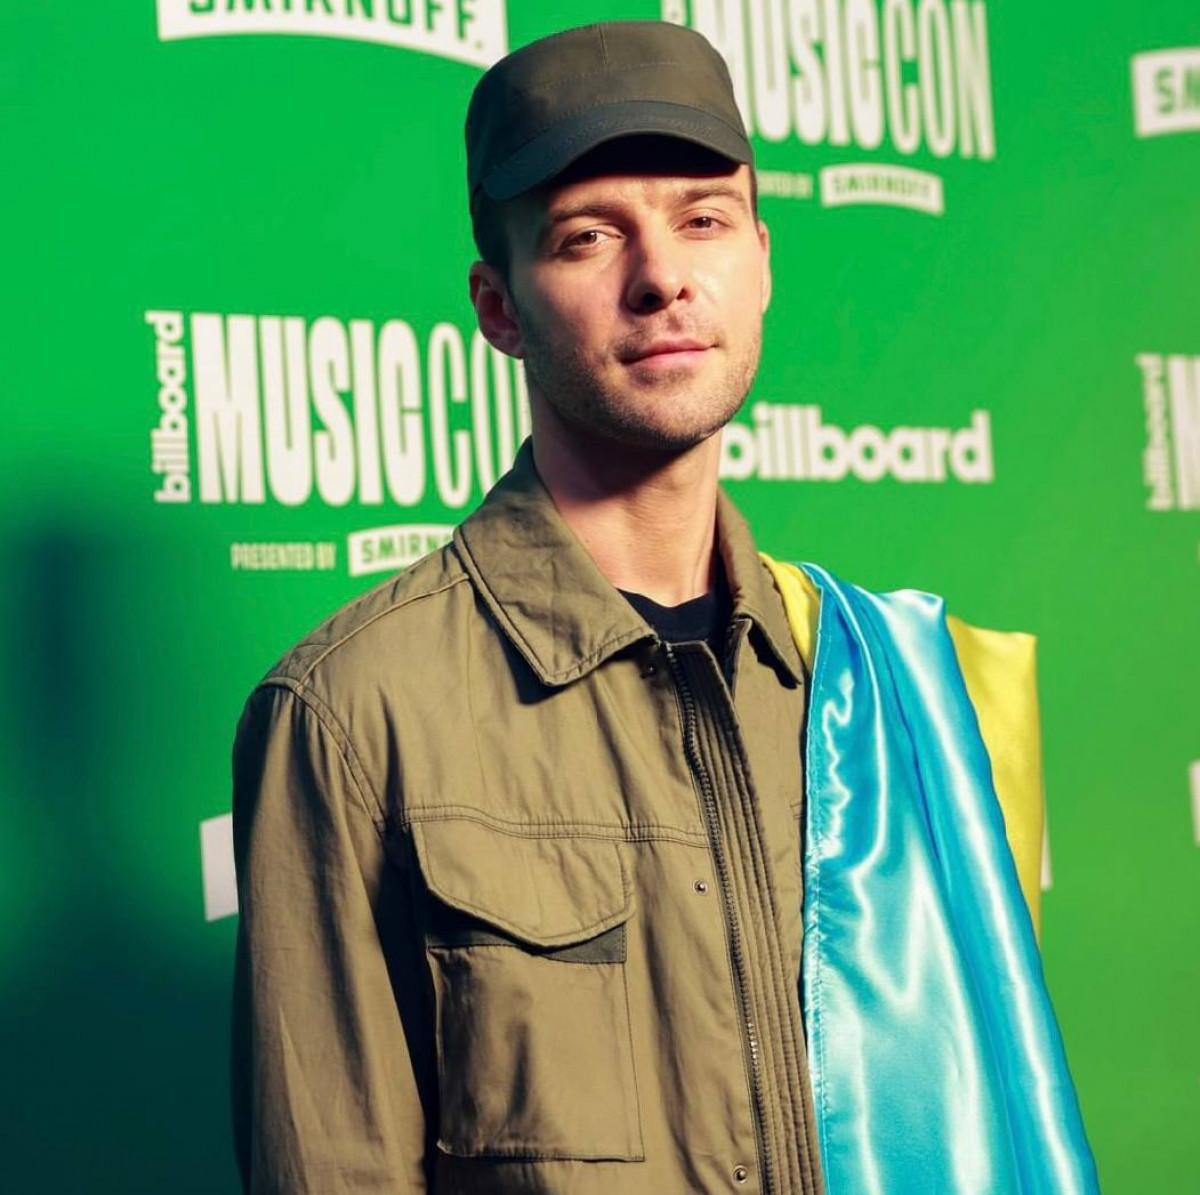 Макс Барських виступив на Billboard MusicCon 